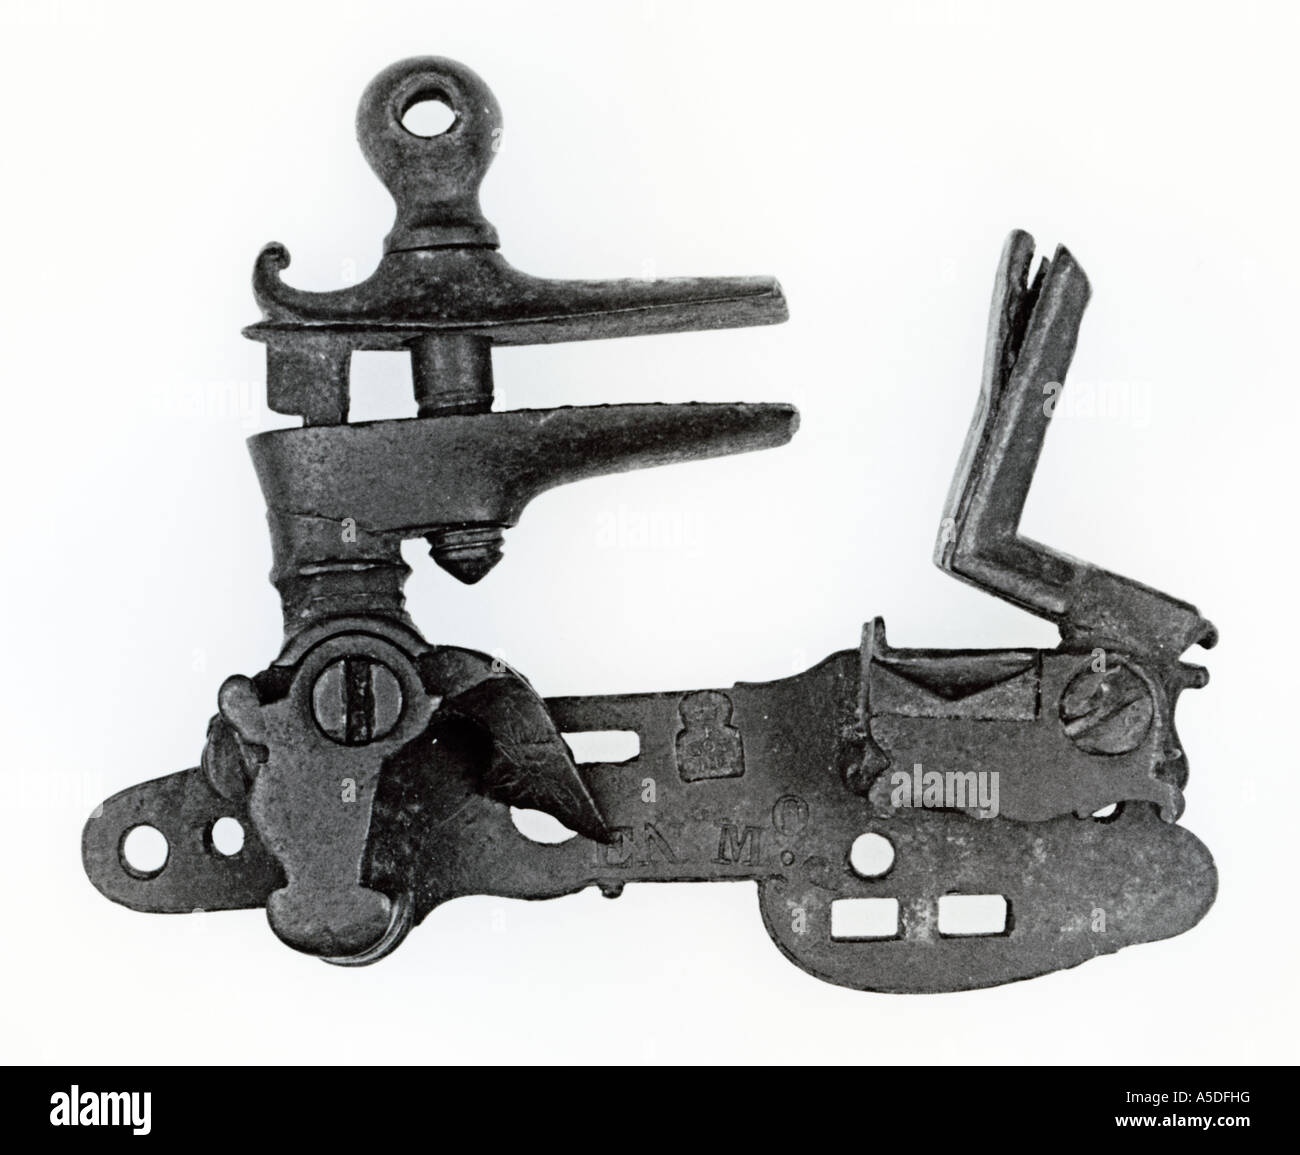 Antique flintlock mechanism Stock Photo